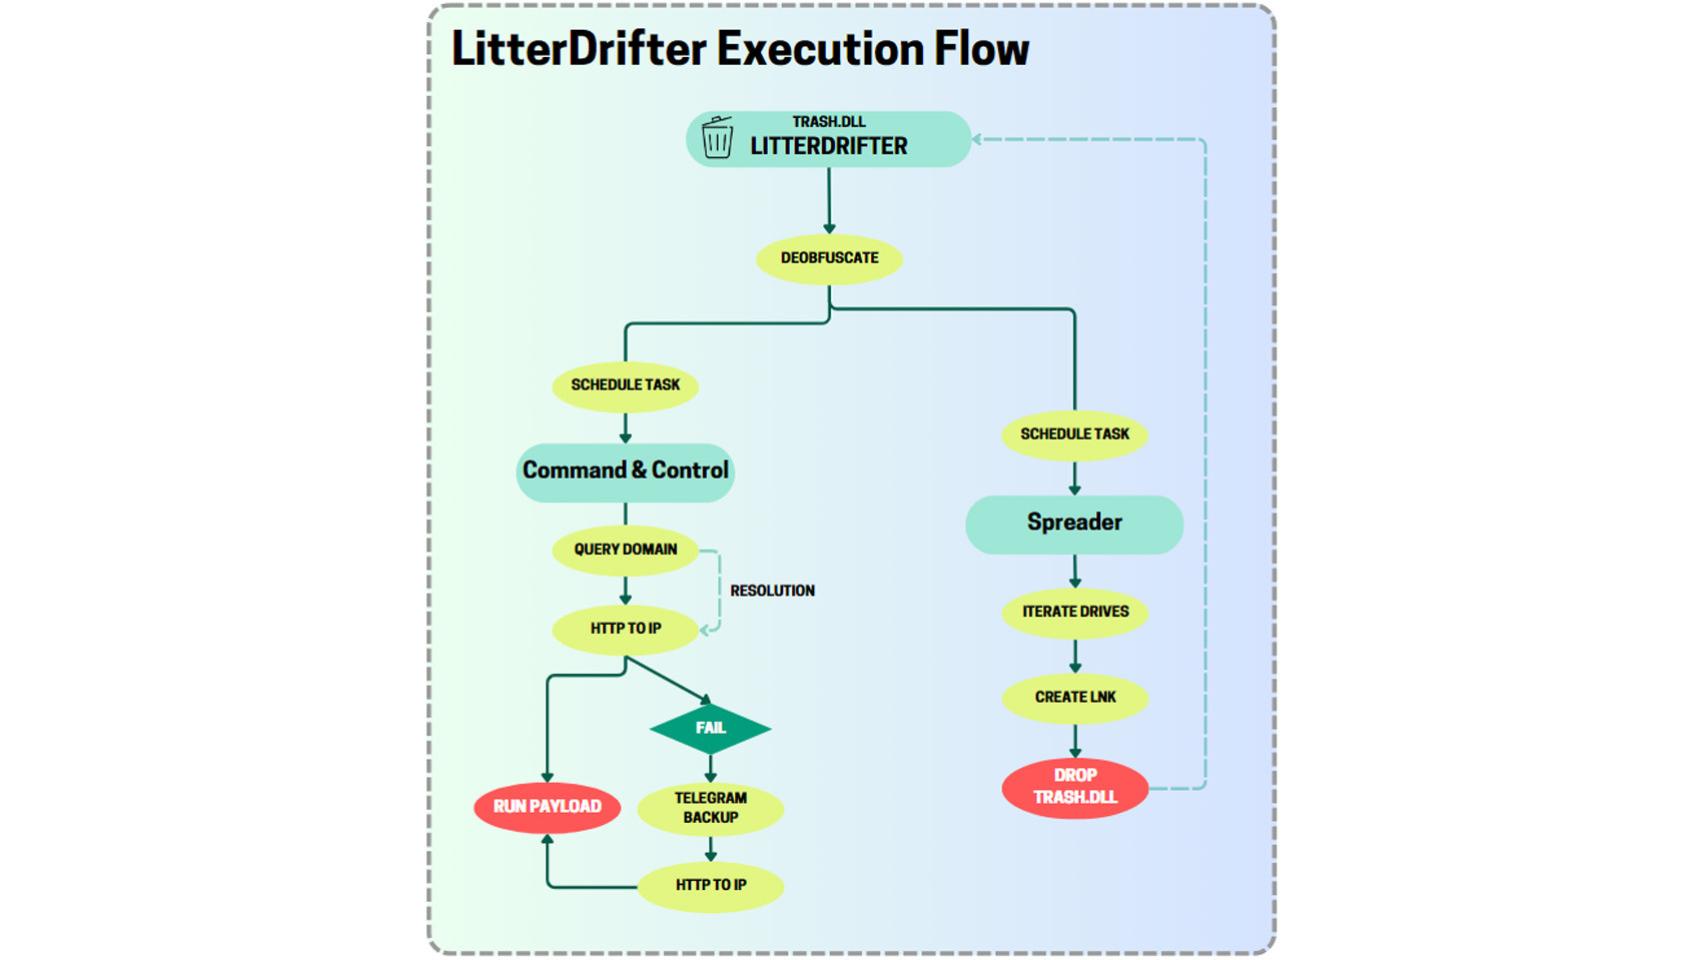 Estructura de ejecución de LitterDrifter.